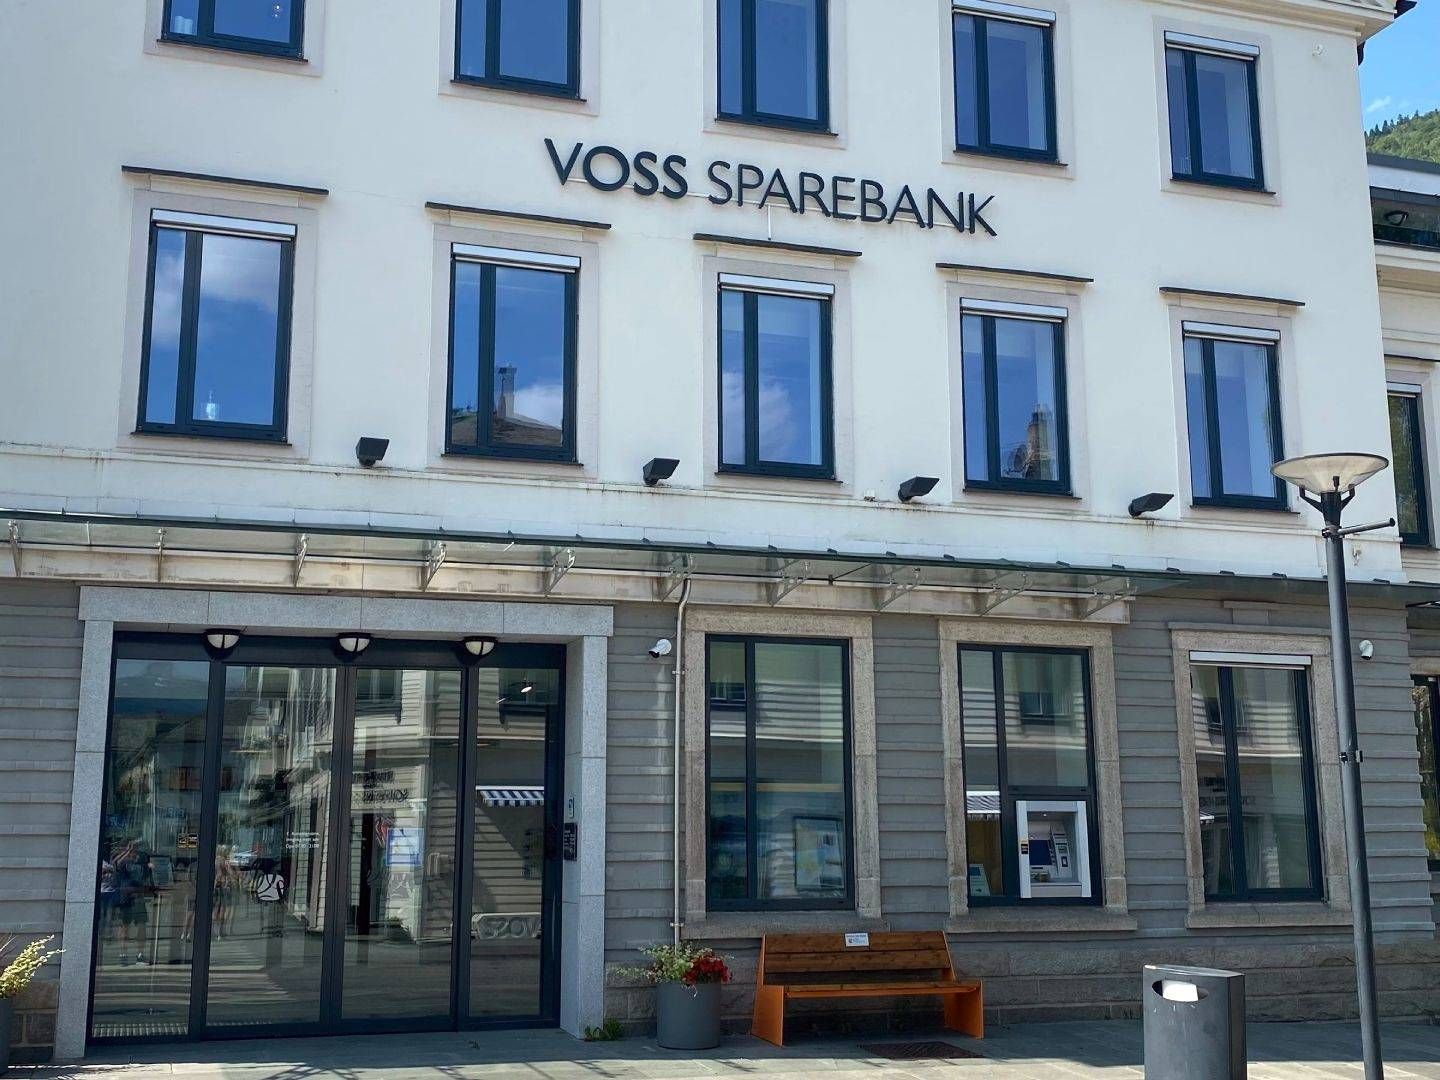 Voss sparebank møter sterk konkurranse på utlån, men leverer likevel vekst på viktige parametre i tredje kvartal. | Foto: Magnus Eidem